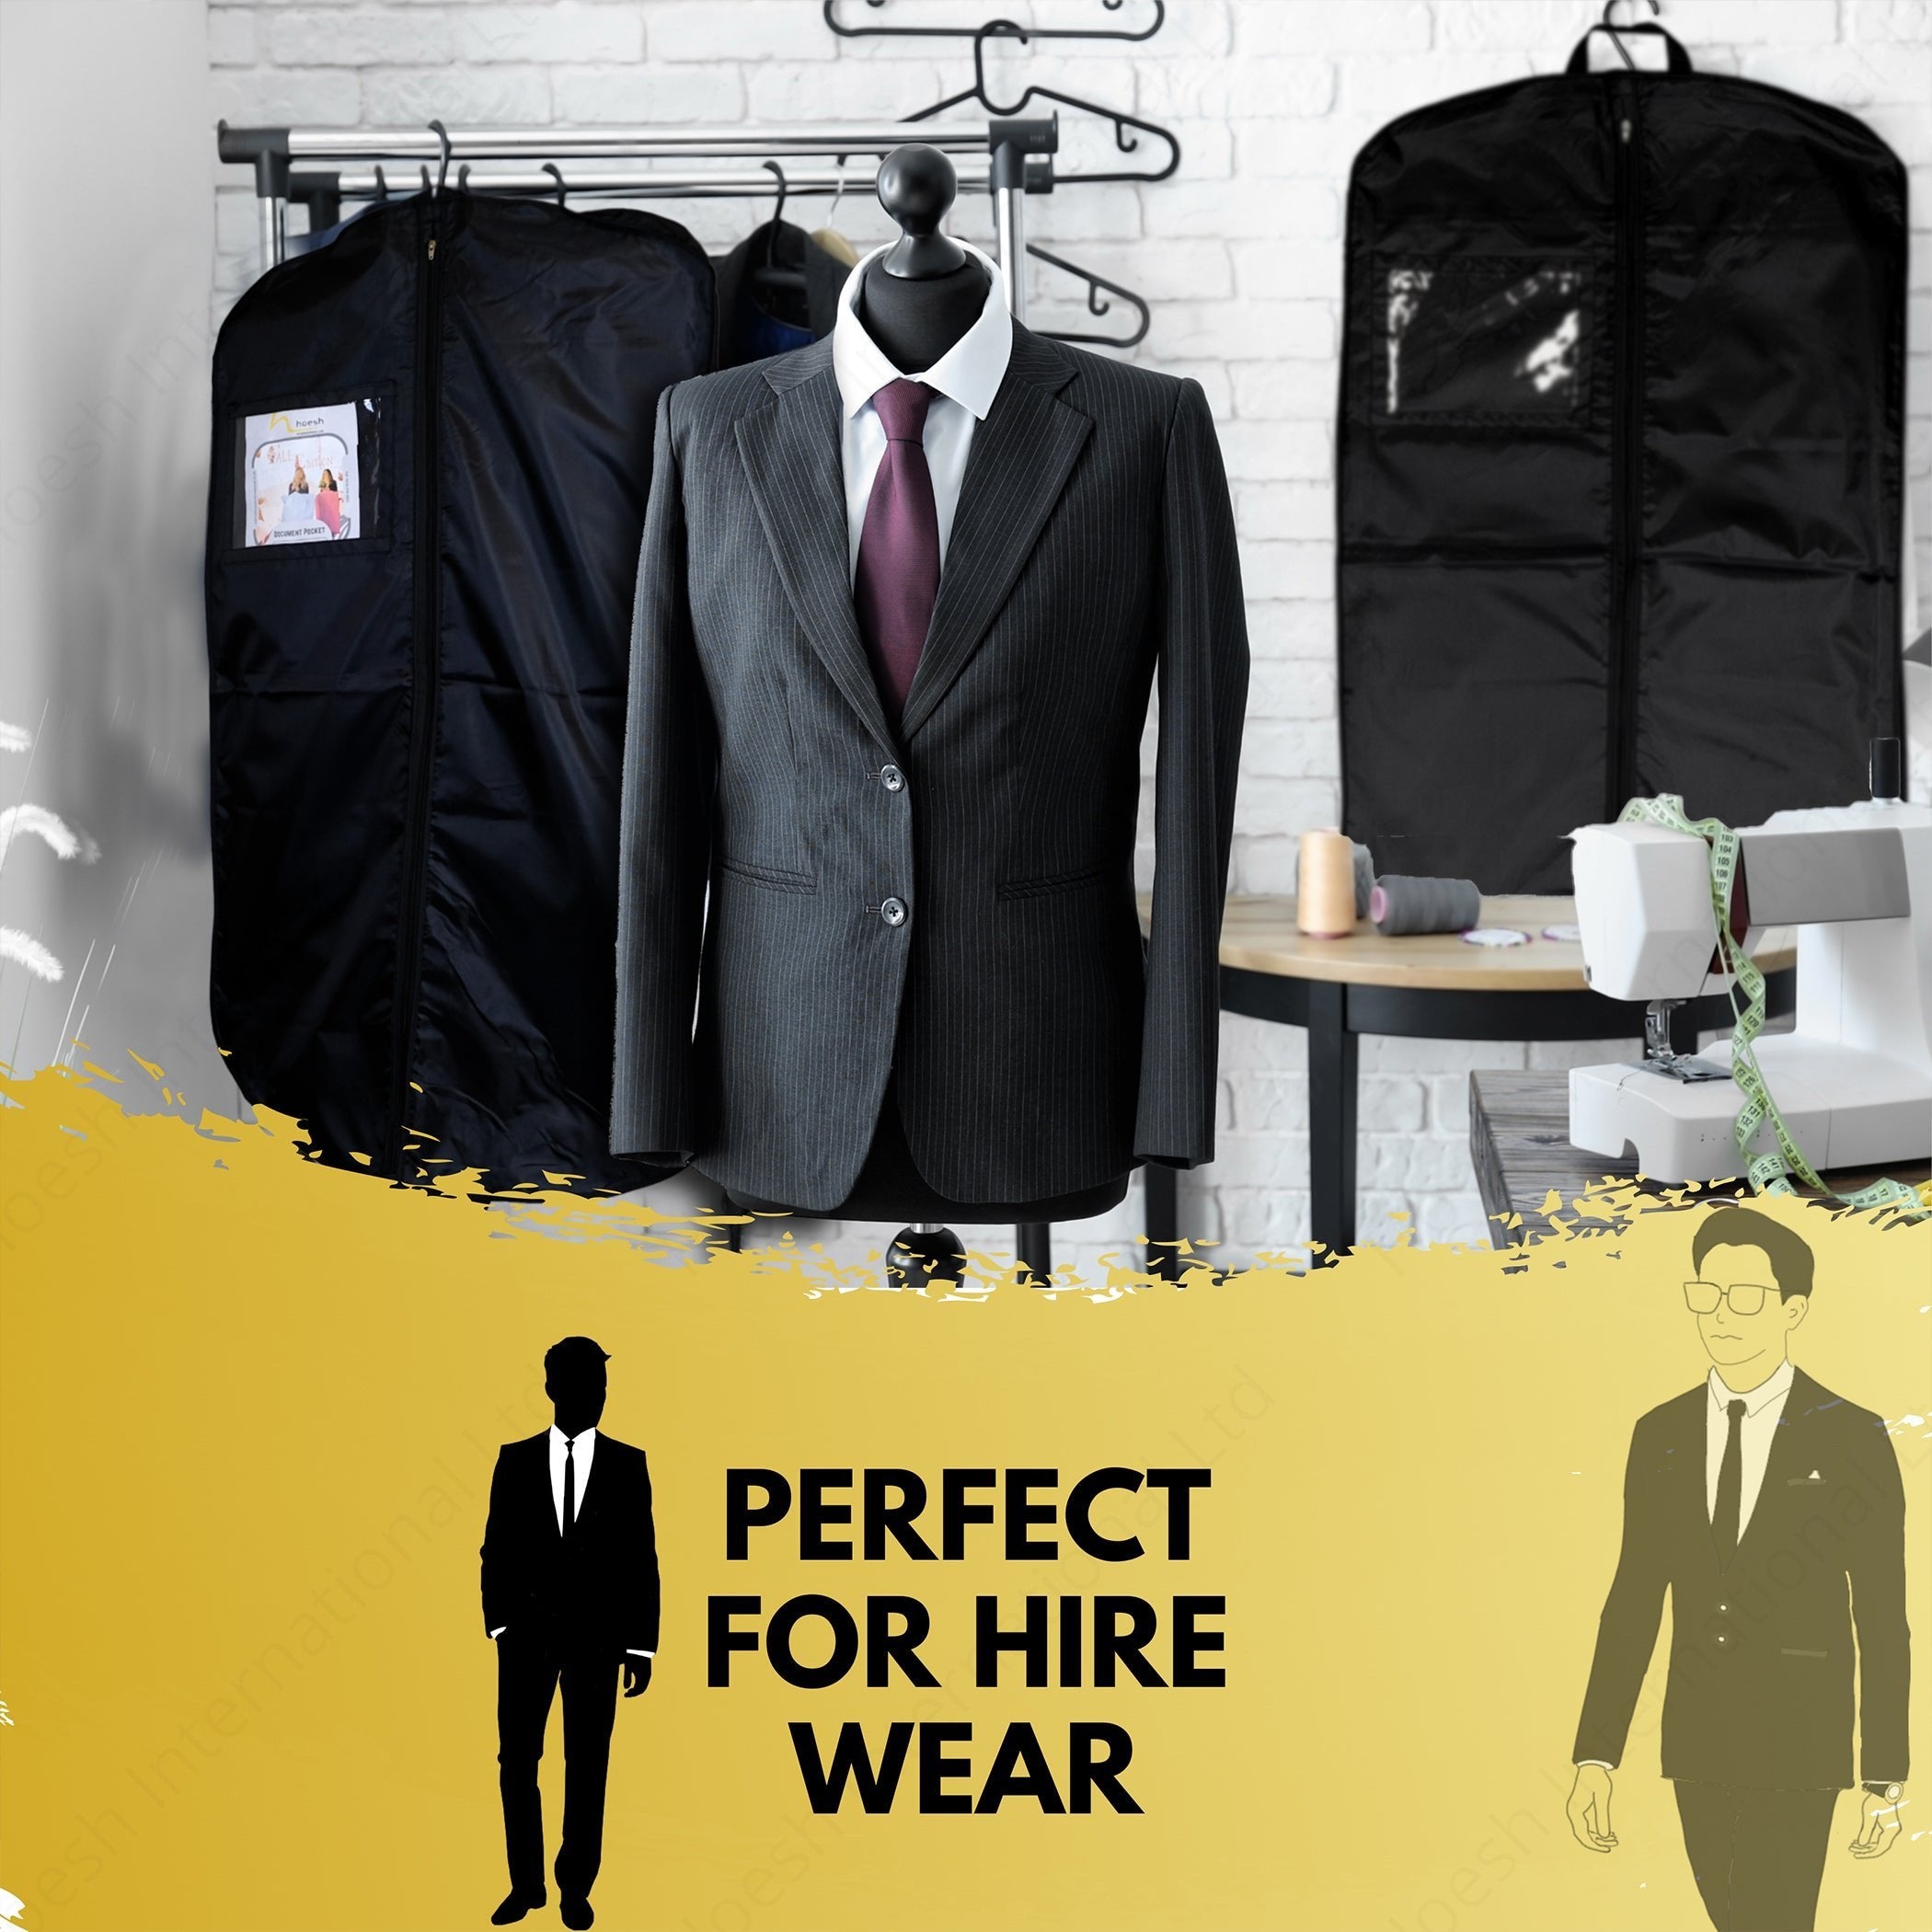 URG nylon hire suit carrier - Hoesh International Ltd